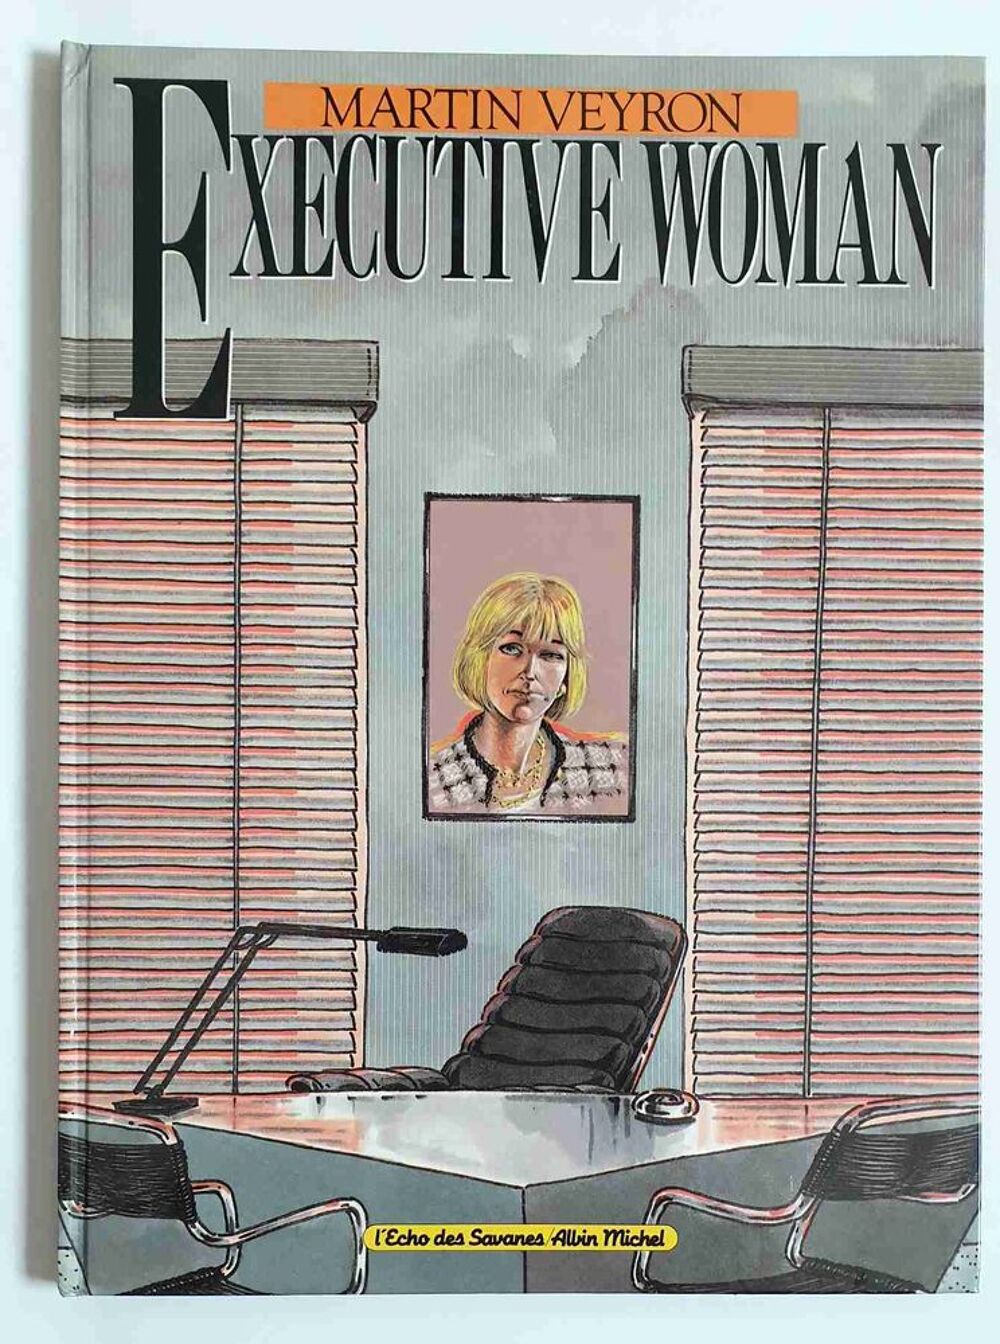 Executive Woman Livres et BD